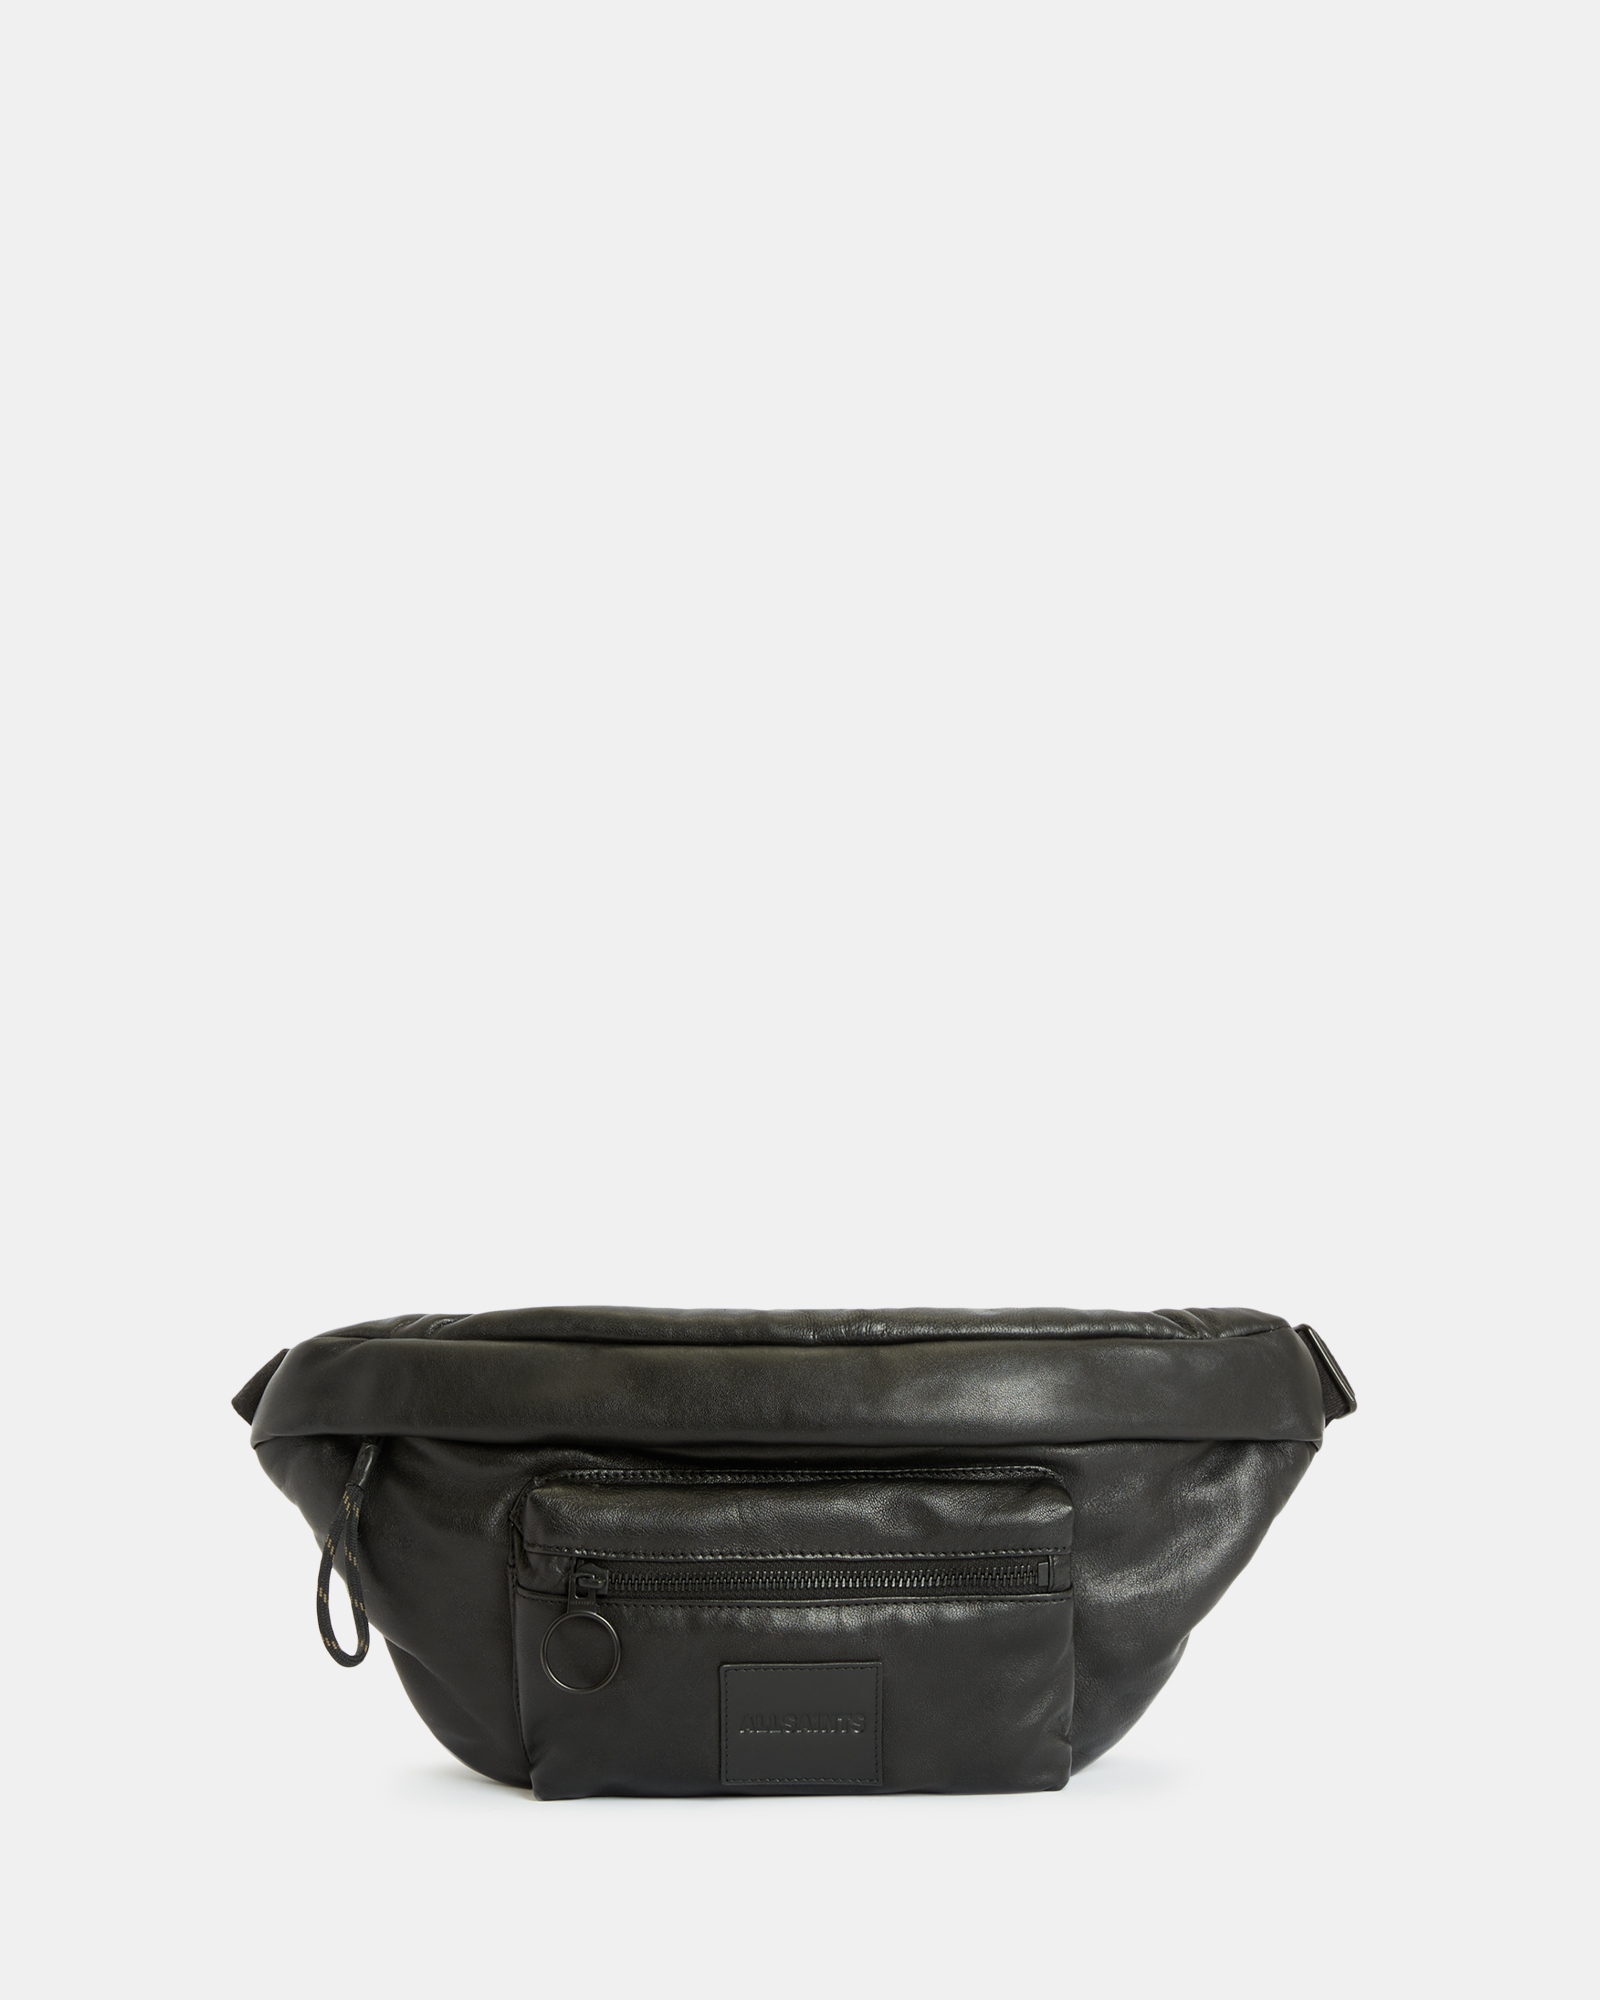 AllSaints Ronin Leather Bum Bag,, Black